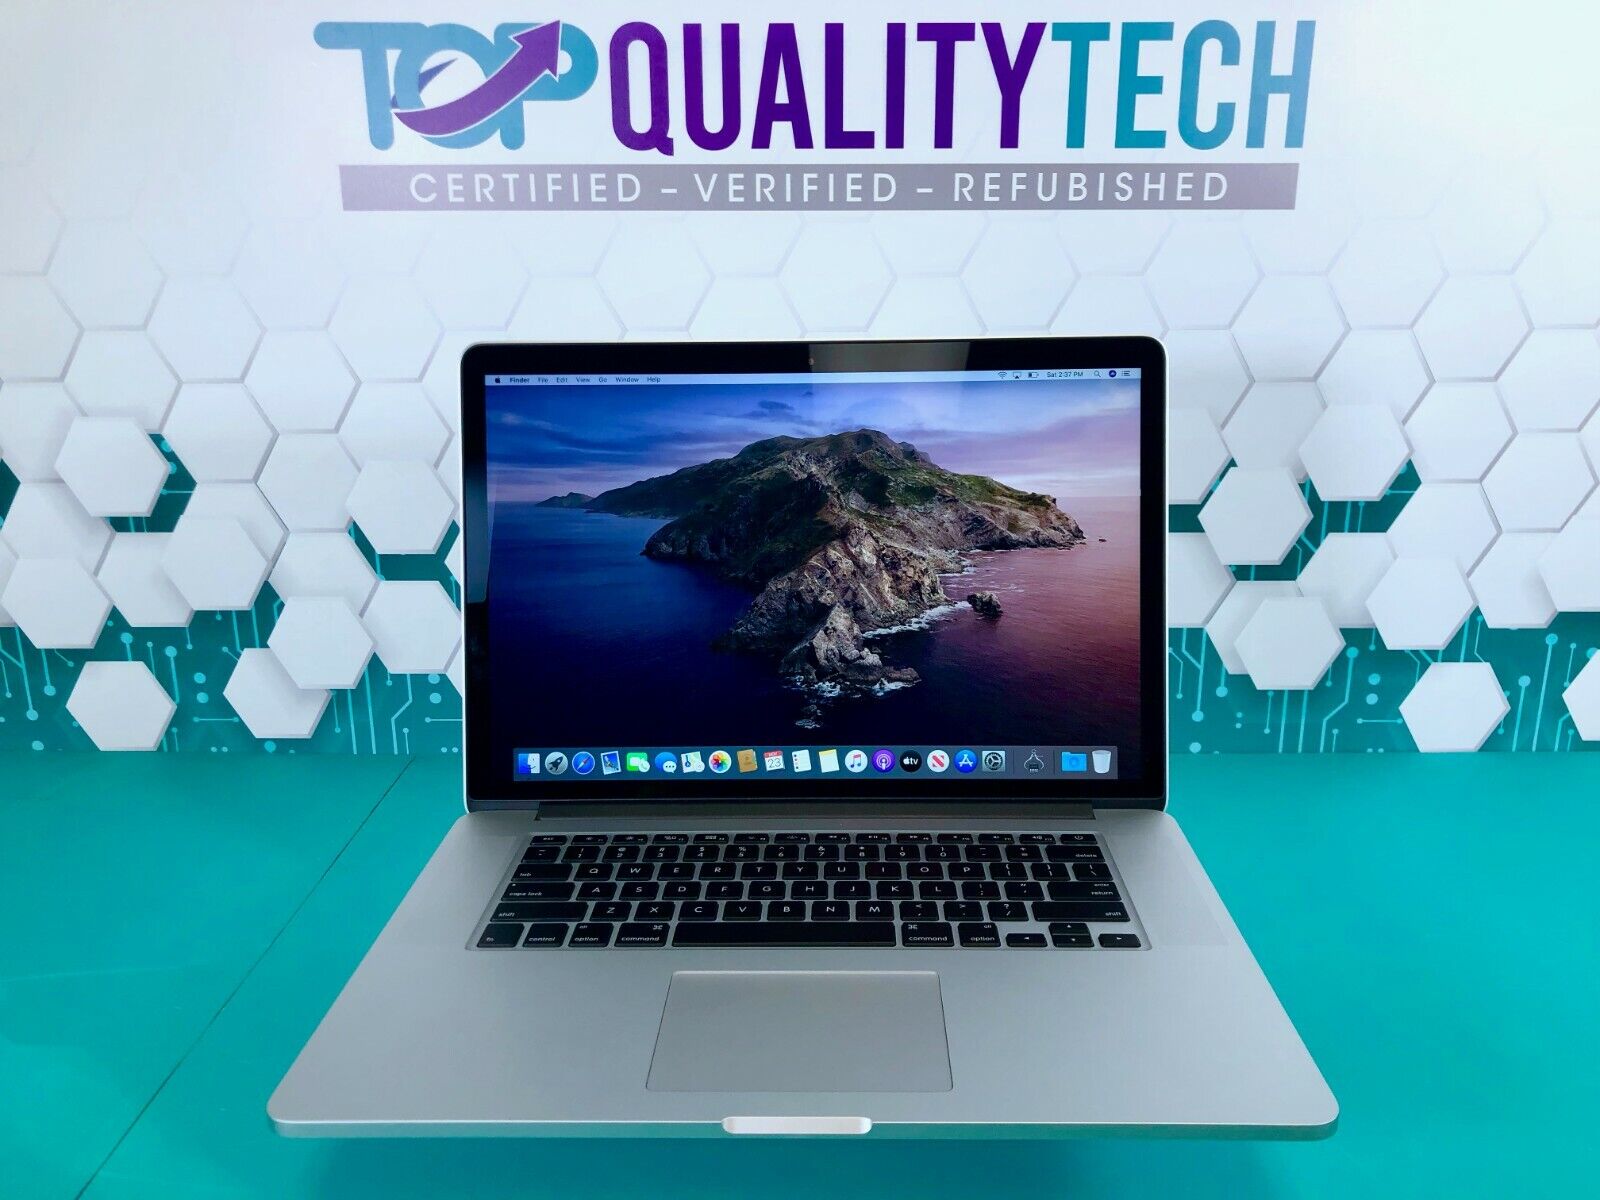 Apple MacBook Pro 15 RETINA - 16GB RAM 1TB SSD - Quad Core i7 - 3 Year Warranty